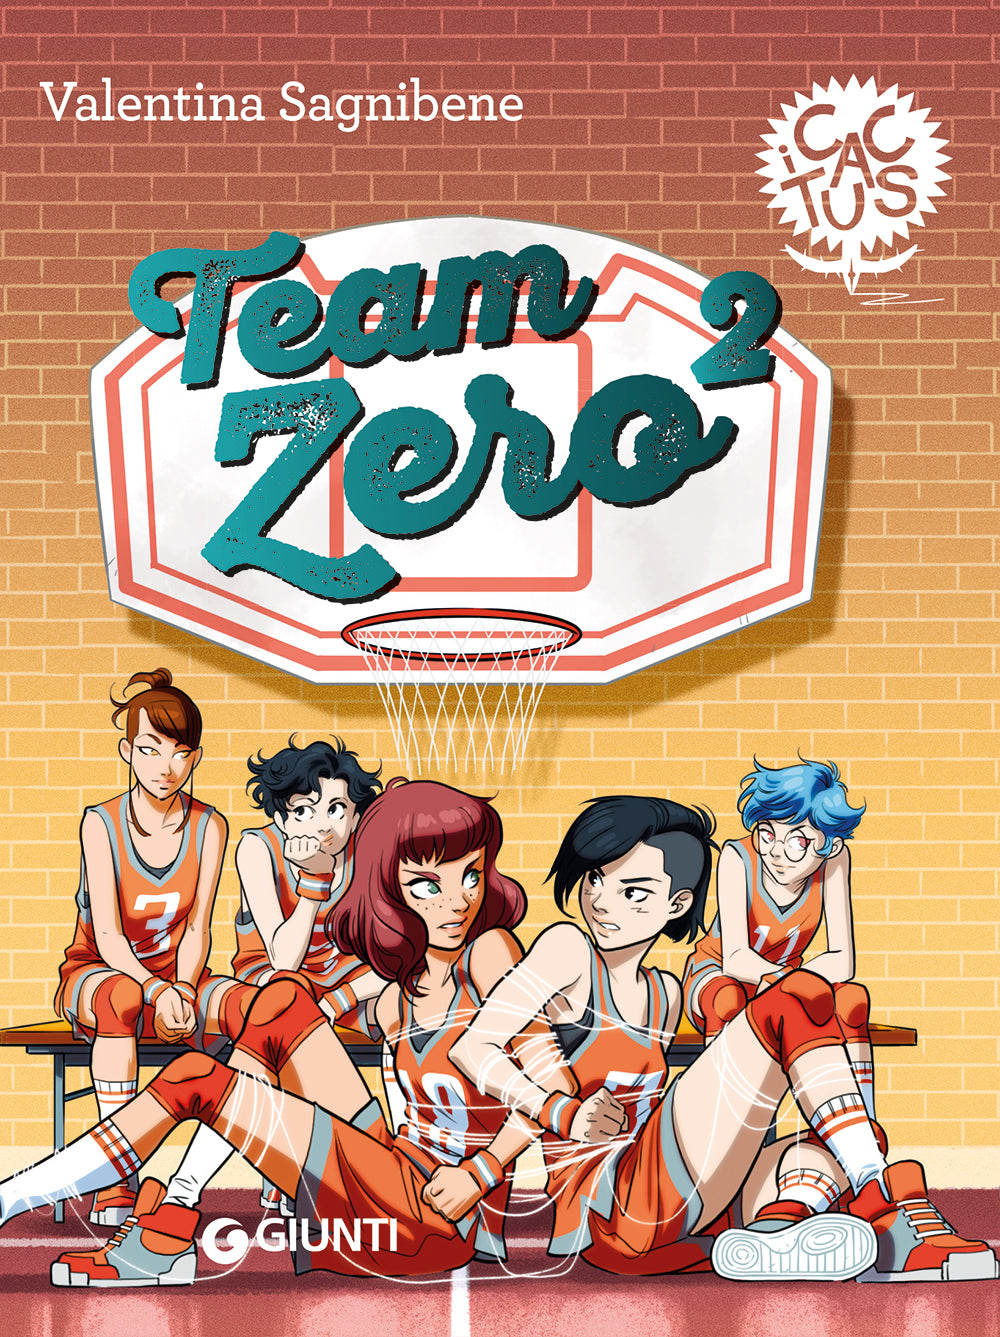 Team Zero²